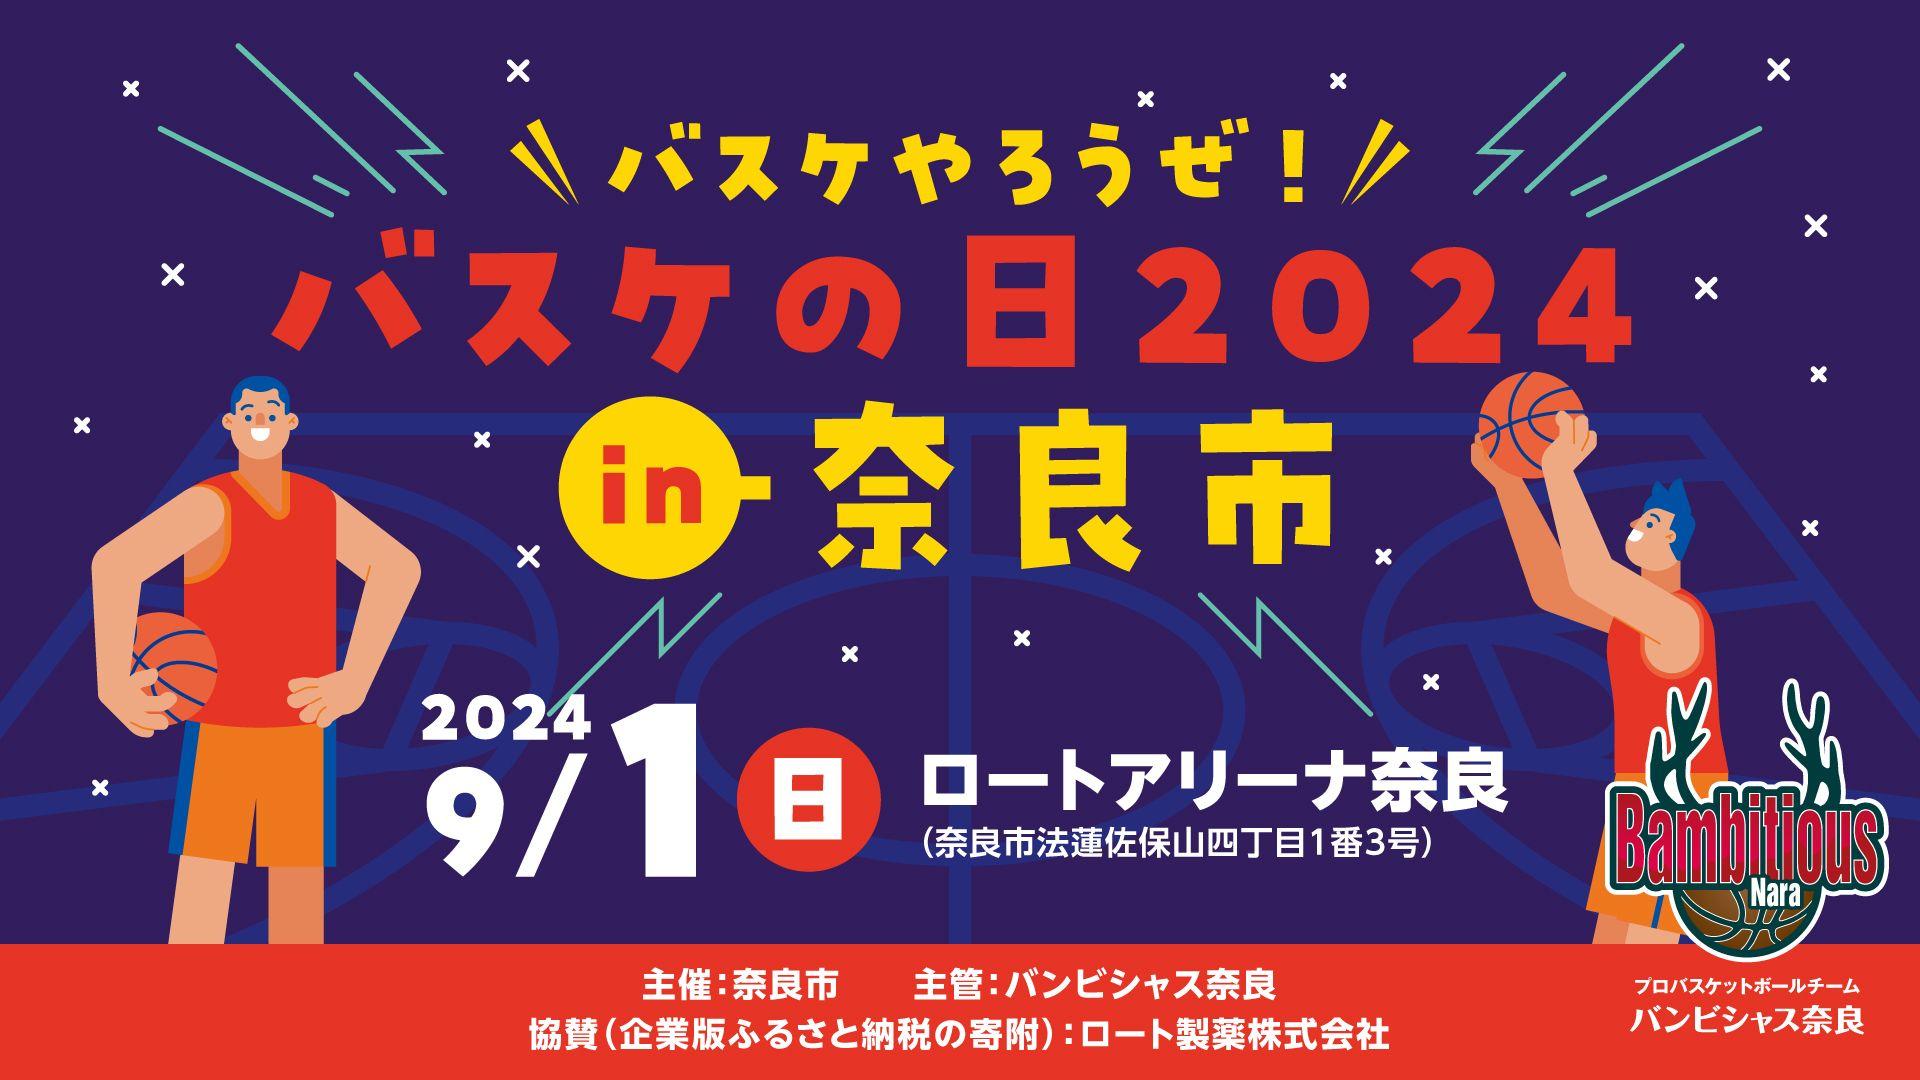 【バンビシャス奈良】"バスケやろうぜ！バスケの日 2024 in 奈良市 開催